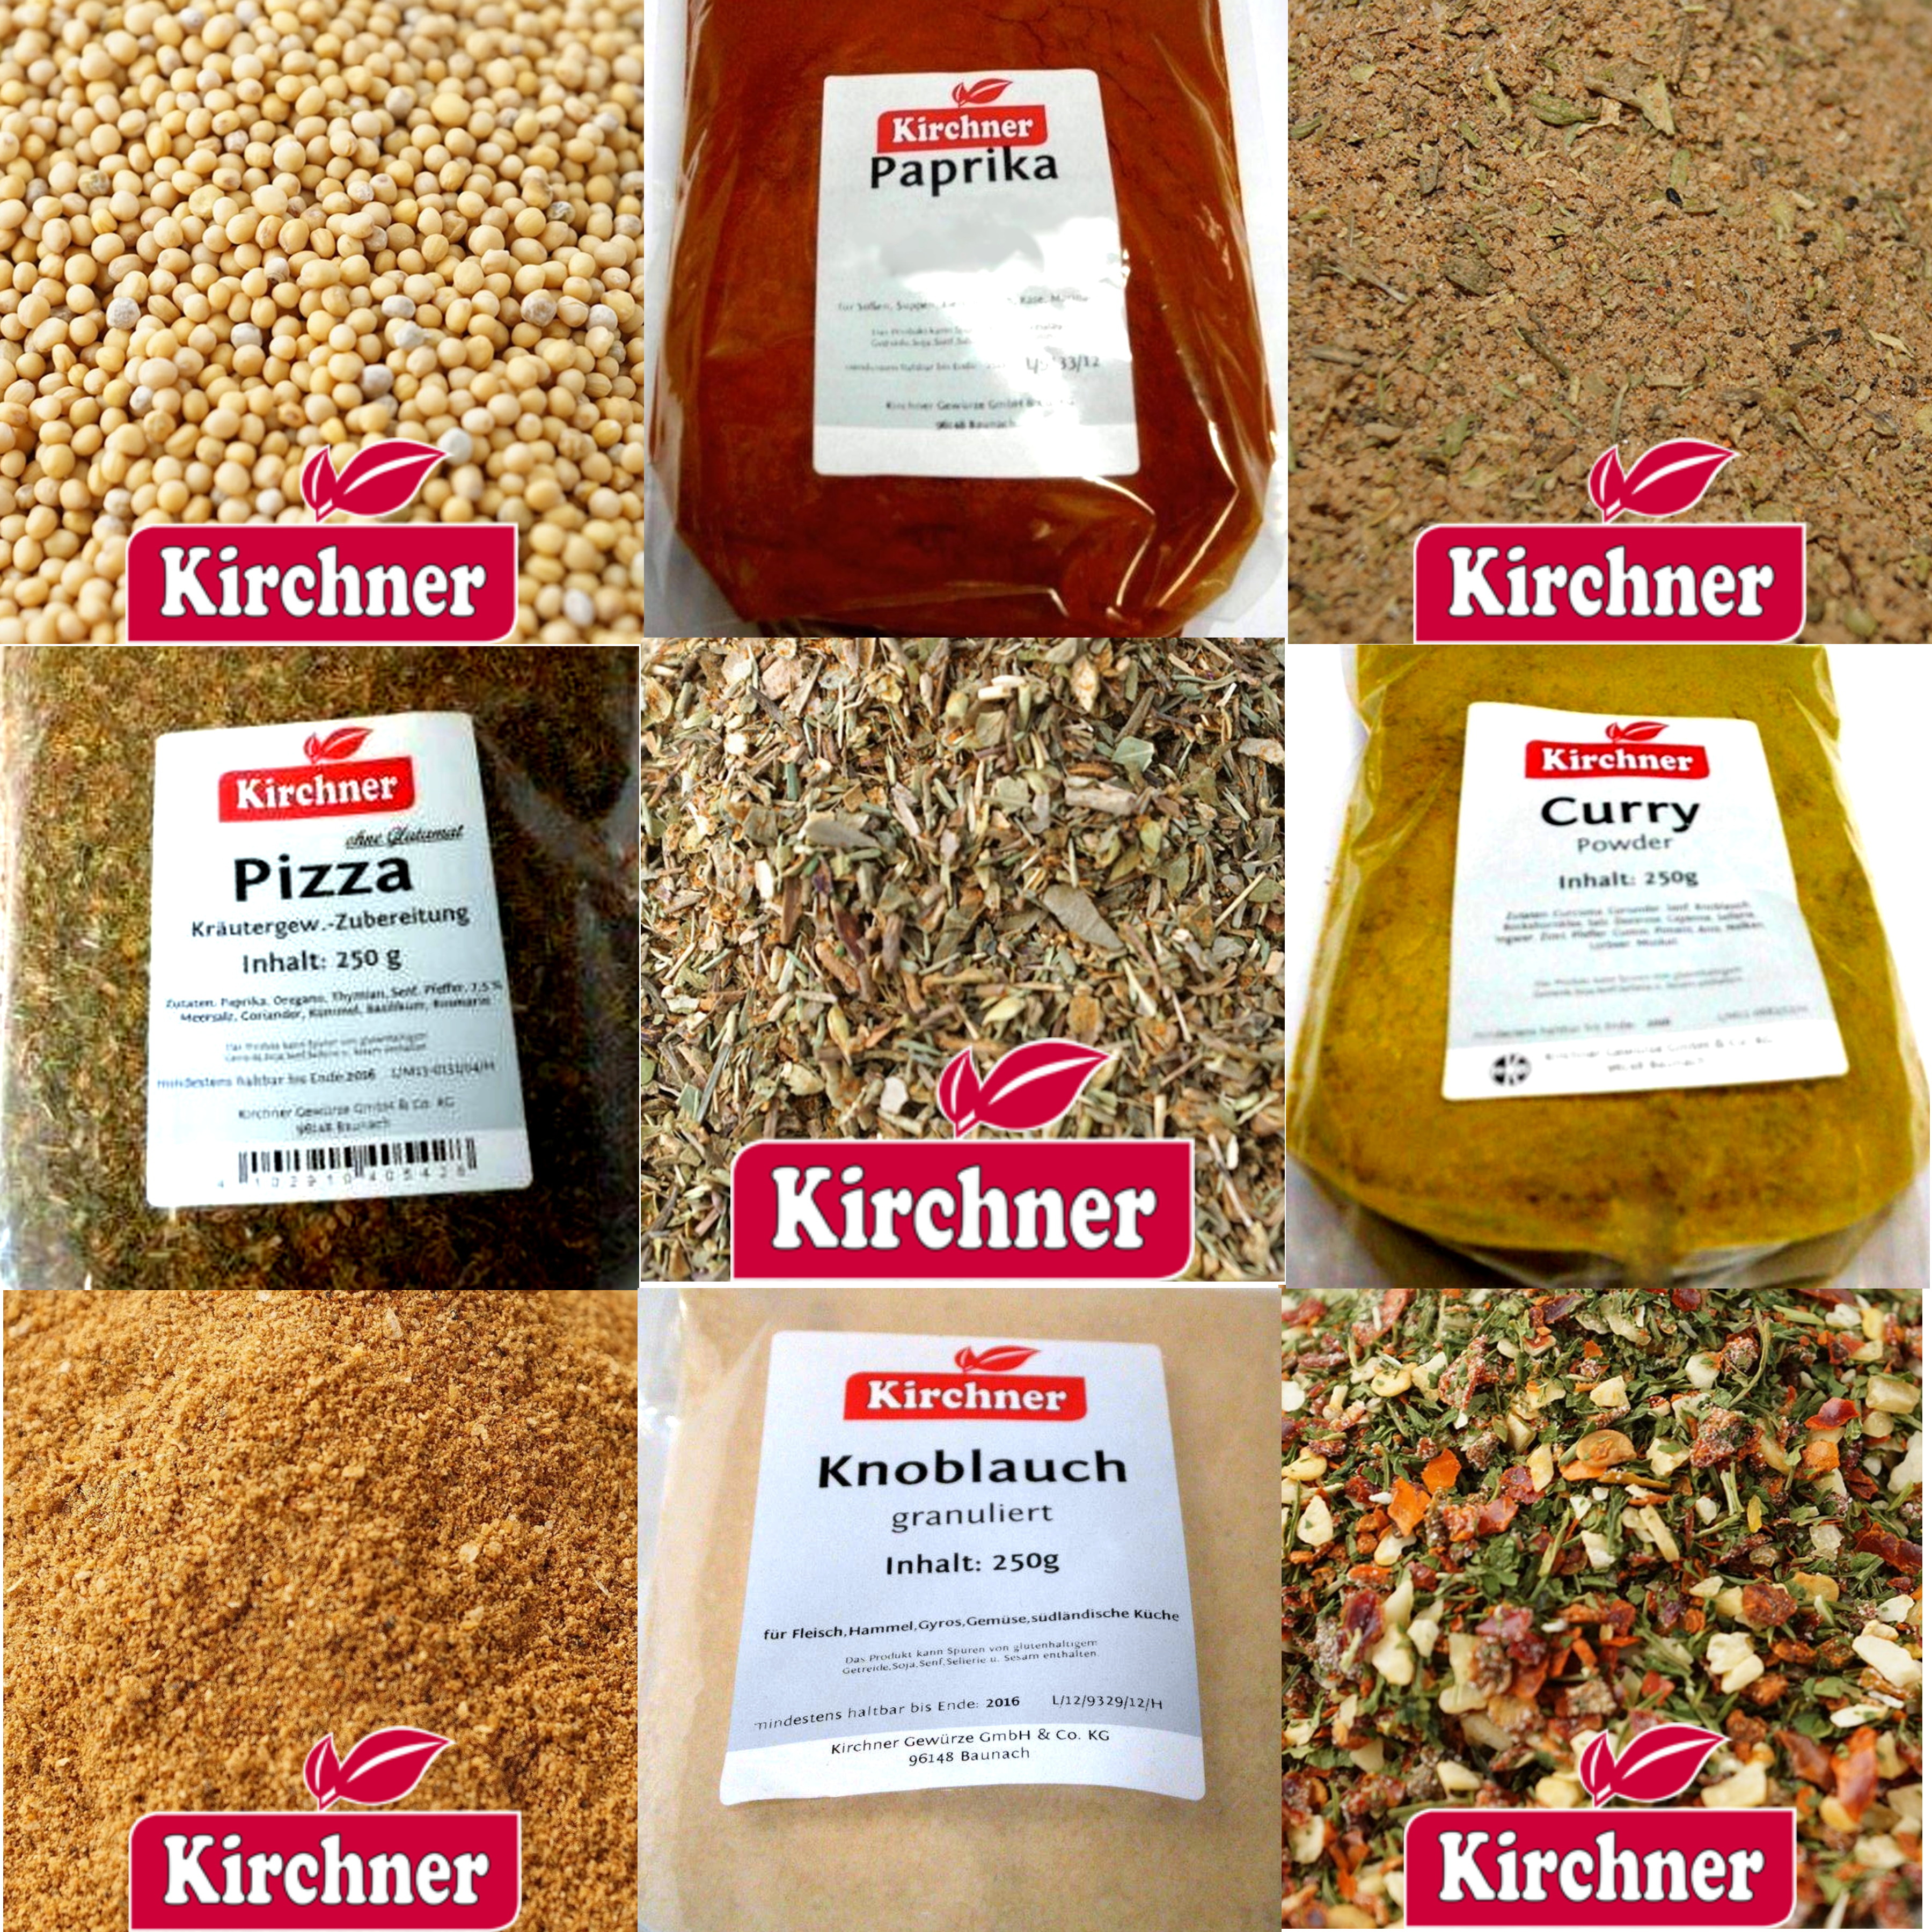 Kirchner Gewürze kaufen in Grabos-Online-Shop